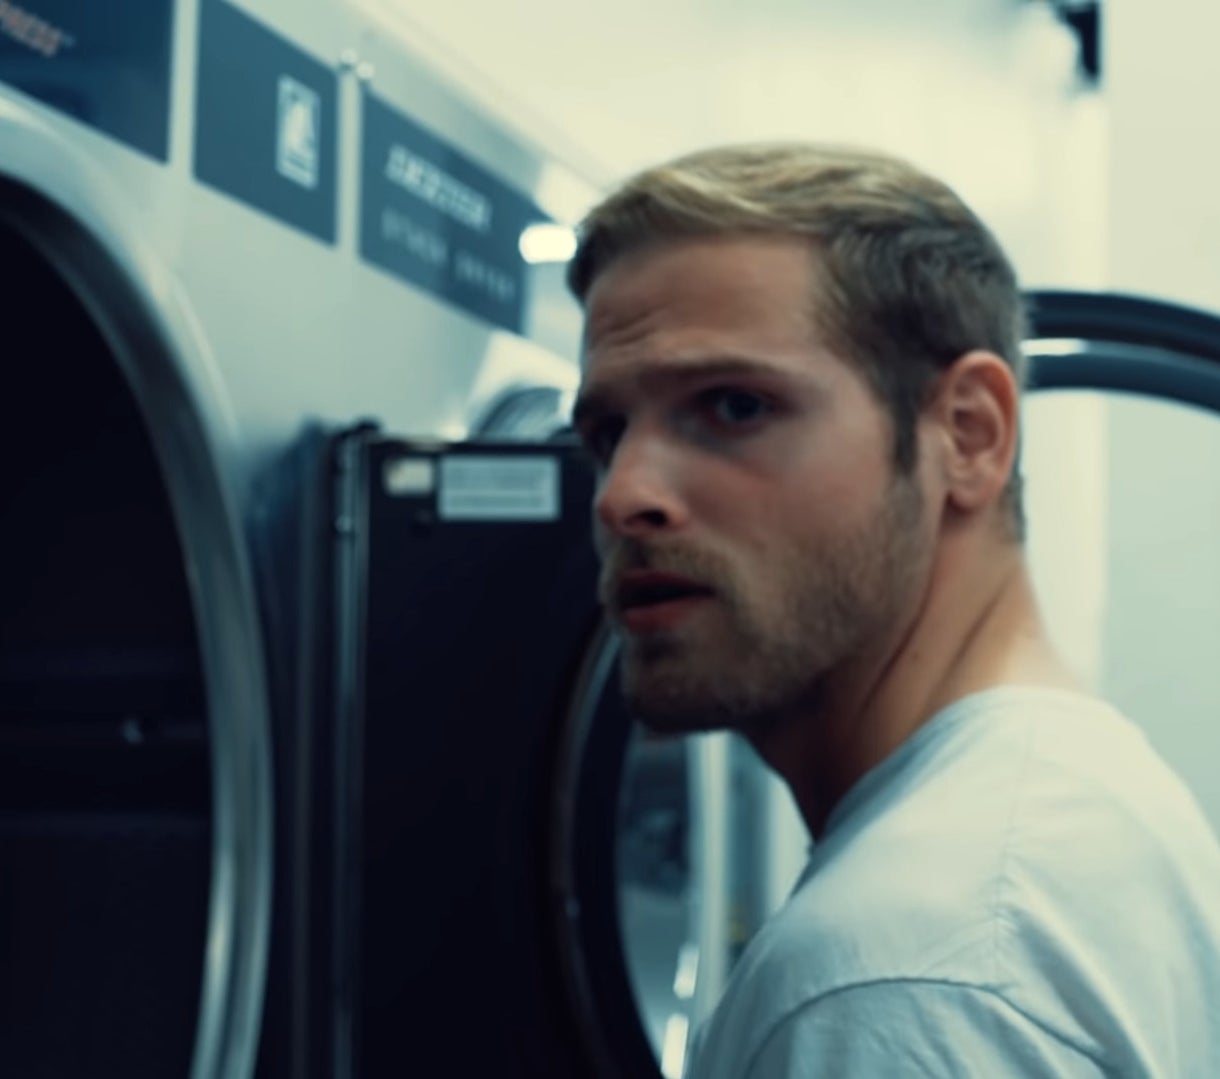 man at laundry machine